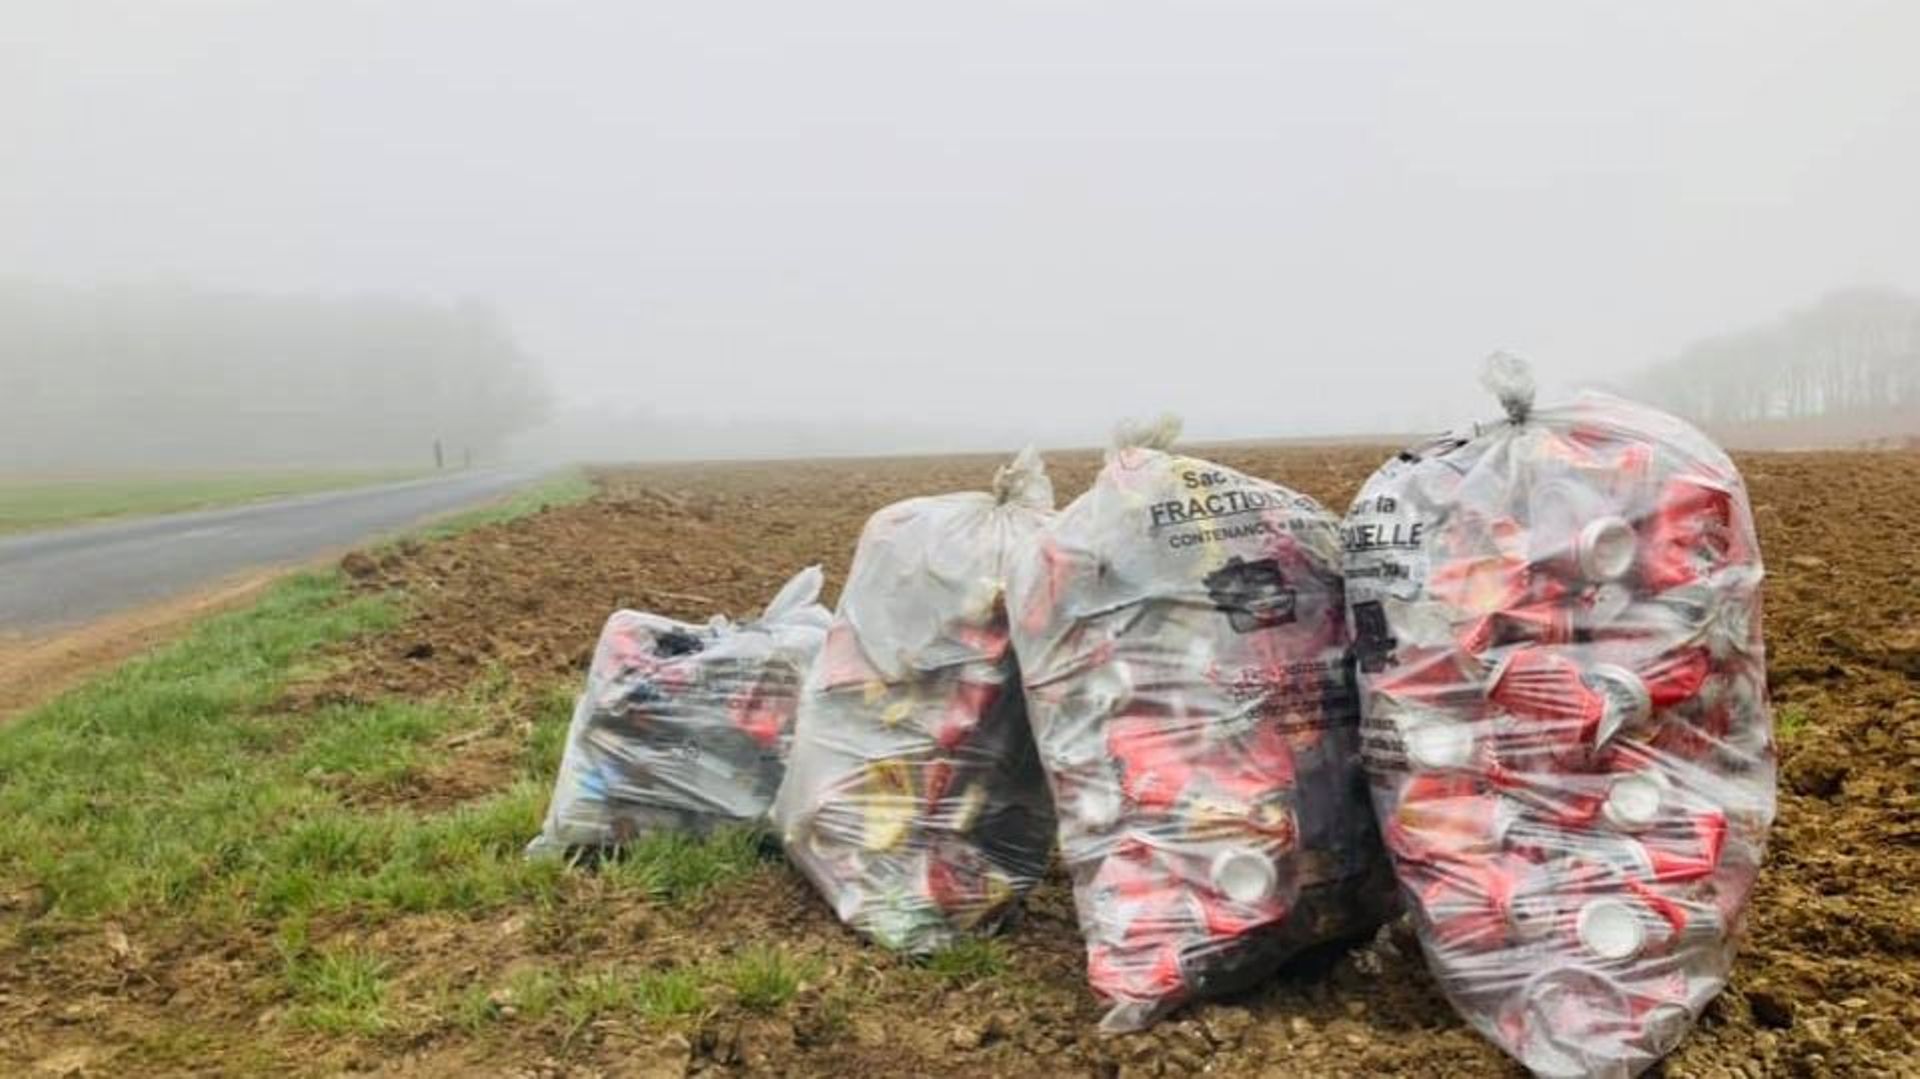 Trop de déchets sont ramassés le long des routes dans la province de Luxembourg